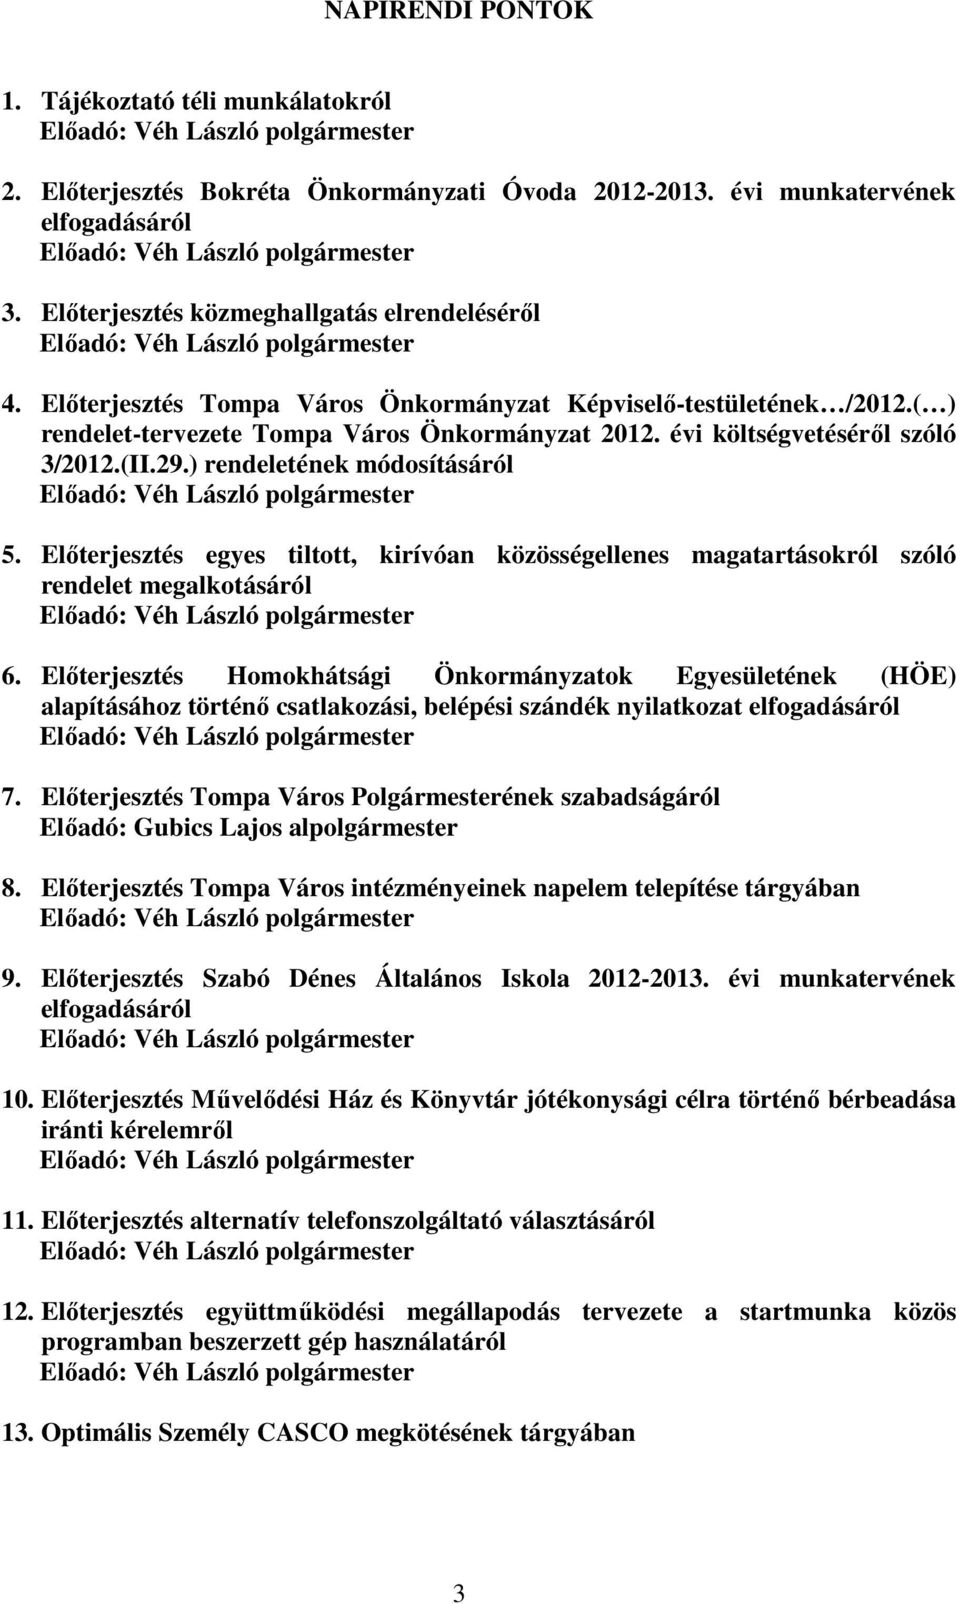 Előterjesztés Tompa Város Önkormányzat Képviselő-testületének /2012.( ) rendelet-tervezete Tompa Város Önkormányzat 2012. évi költségvetéséről szóló 3/2012.(II.29.